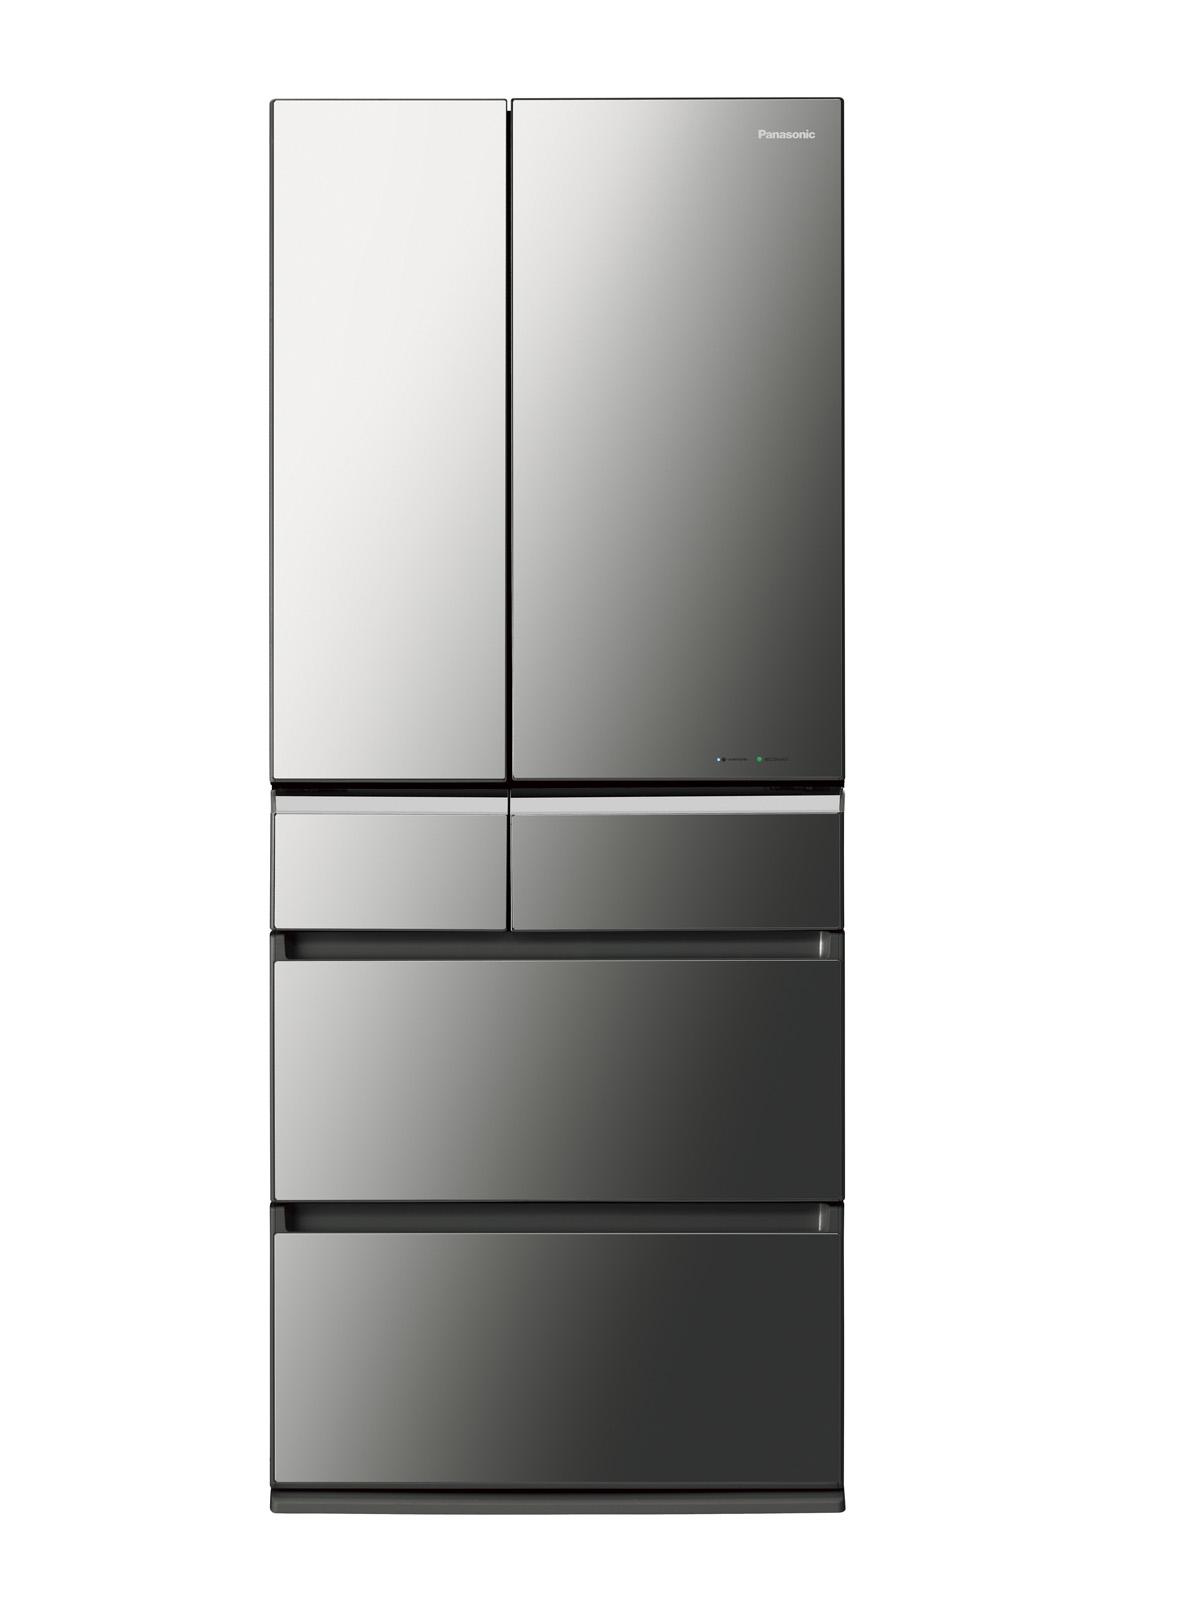 パーシャル搭載冷蔵庫 NR-F672WPV 他11機種を発売 | 個人向け商品